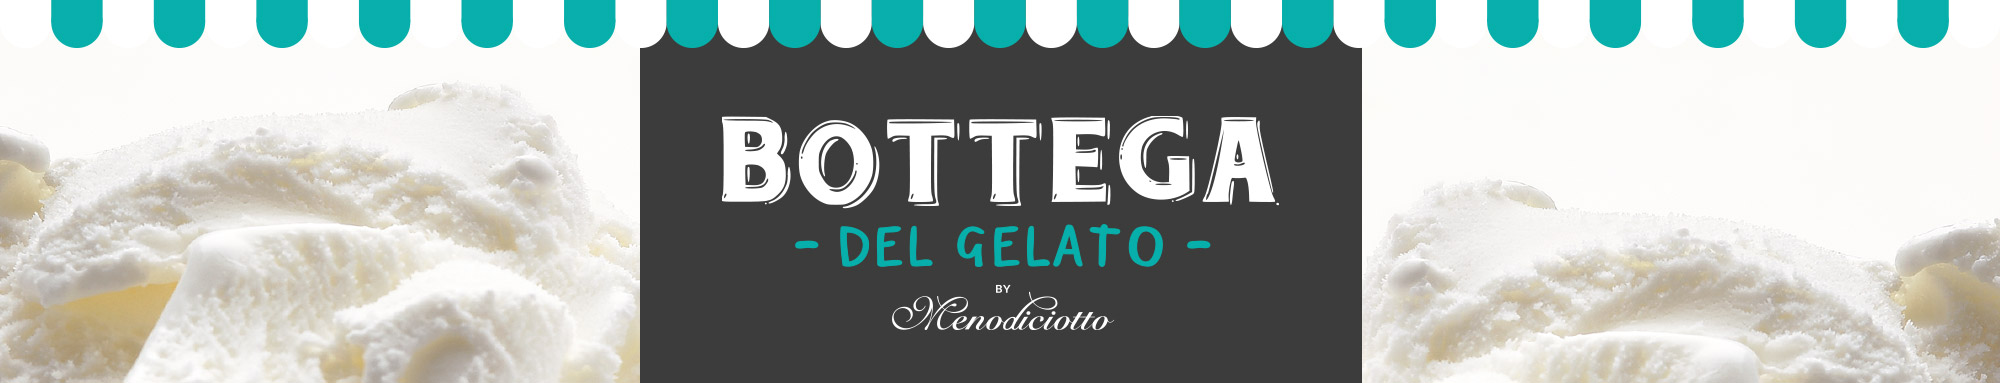 Bottega del Gelato - by Menodiciotto